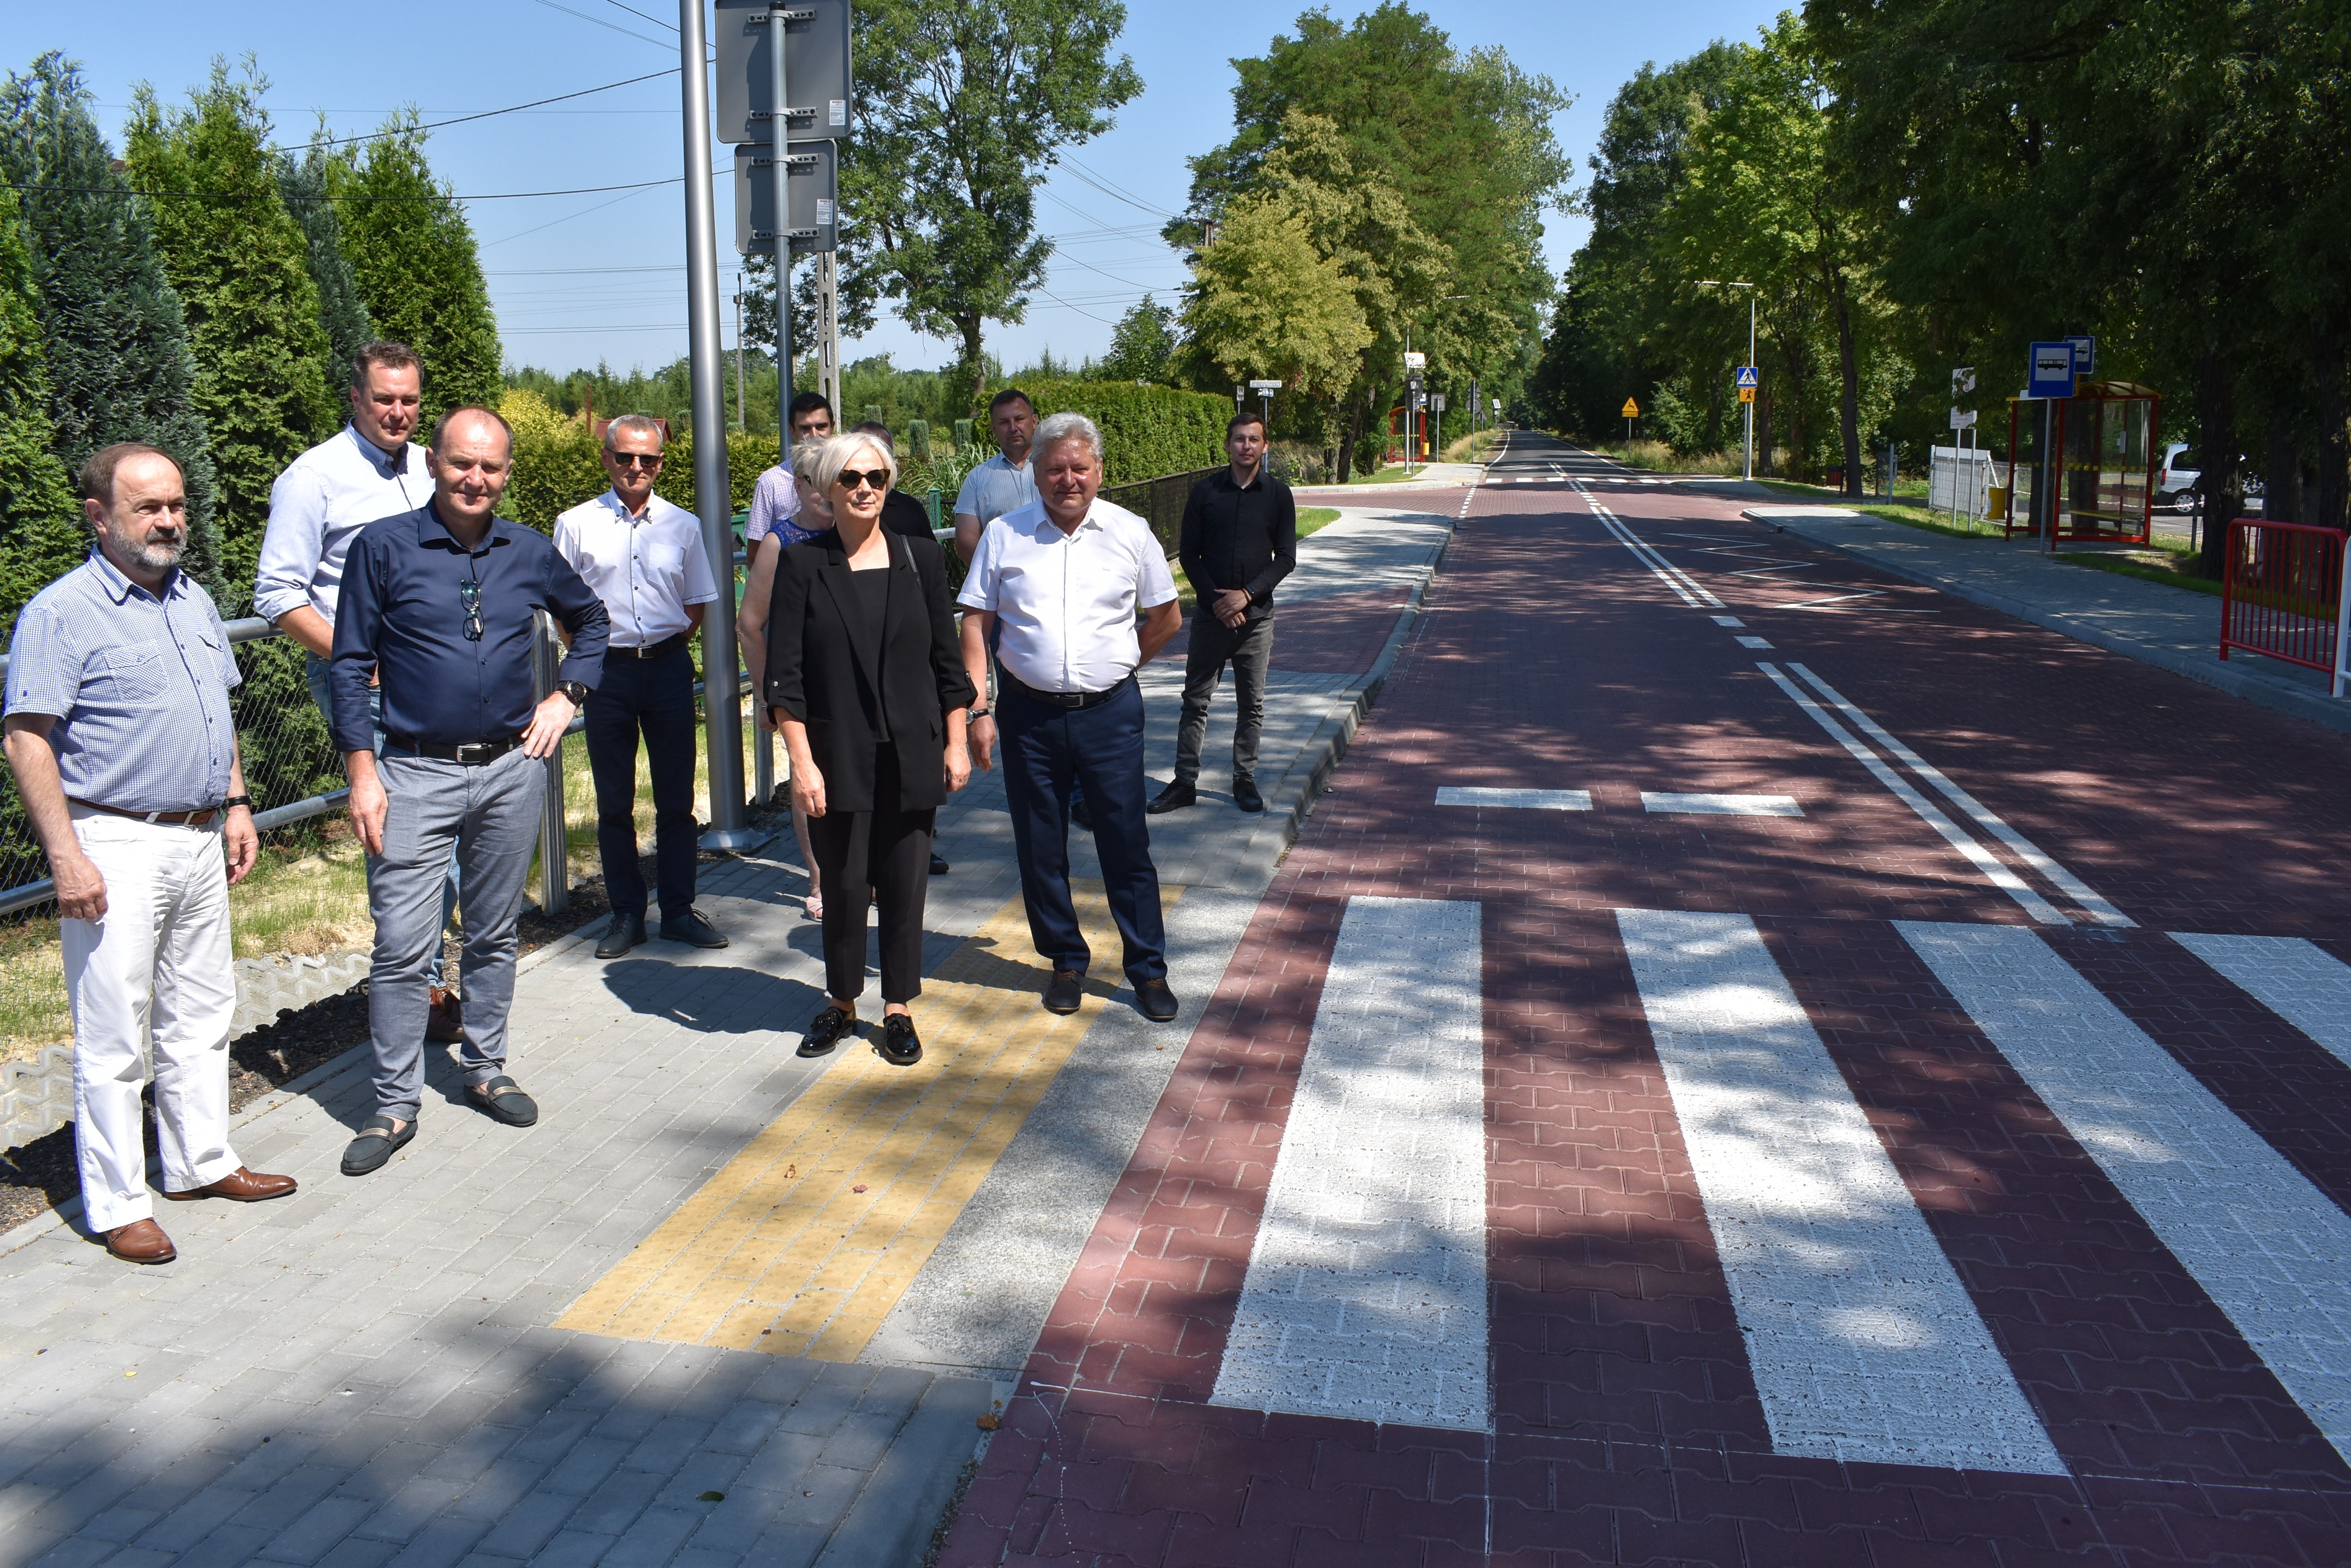 Na oddanej do użytku po modernizacju ulicy Nadwiślańskiej w Bobrku stoją włodarze powiatu, gminy Chełmek oraz parlamentarzyści i mieszkańcy Bobrka.